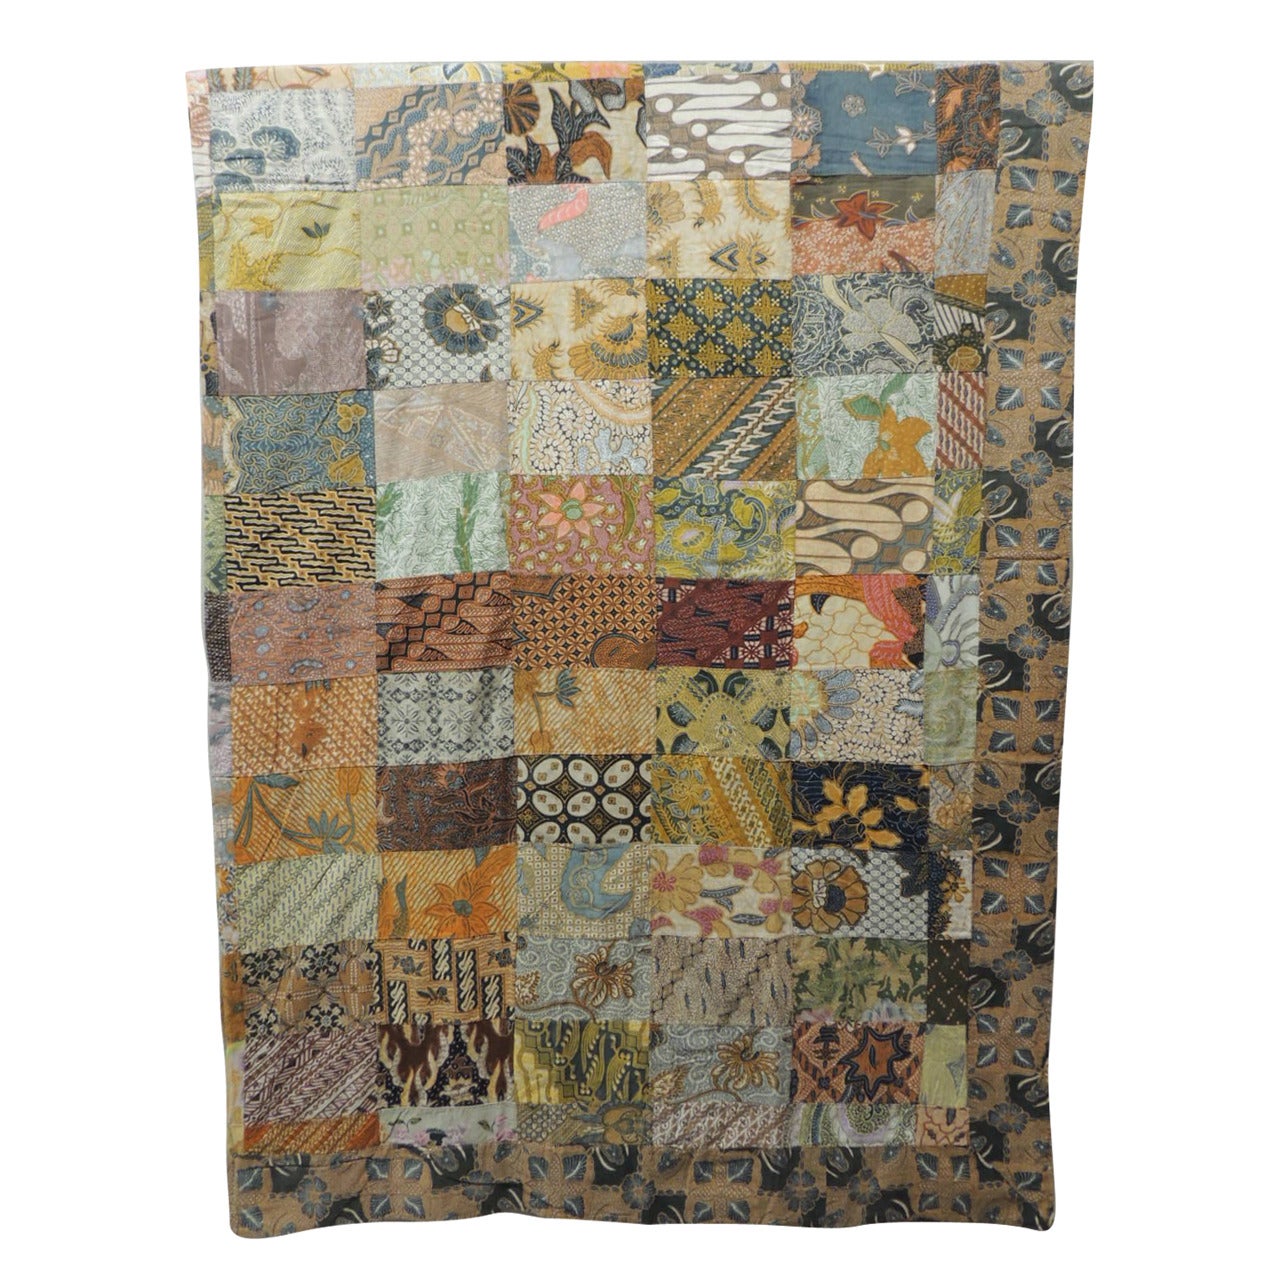 Large Patchwork Colorful Batik Indian Blanket